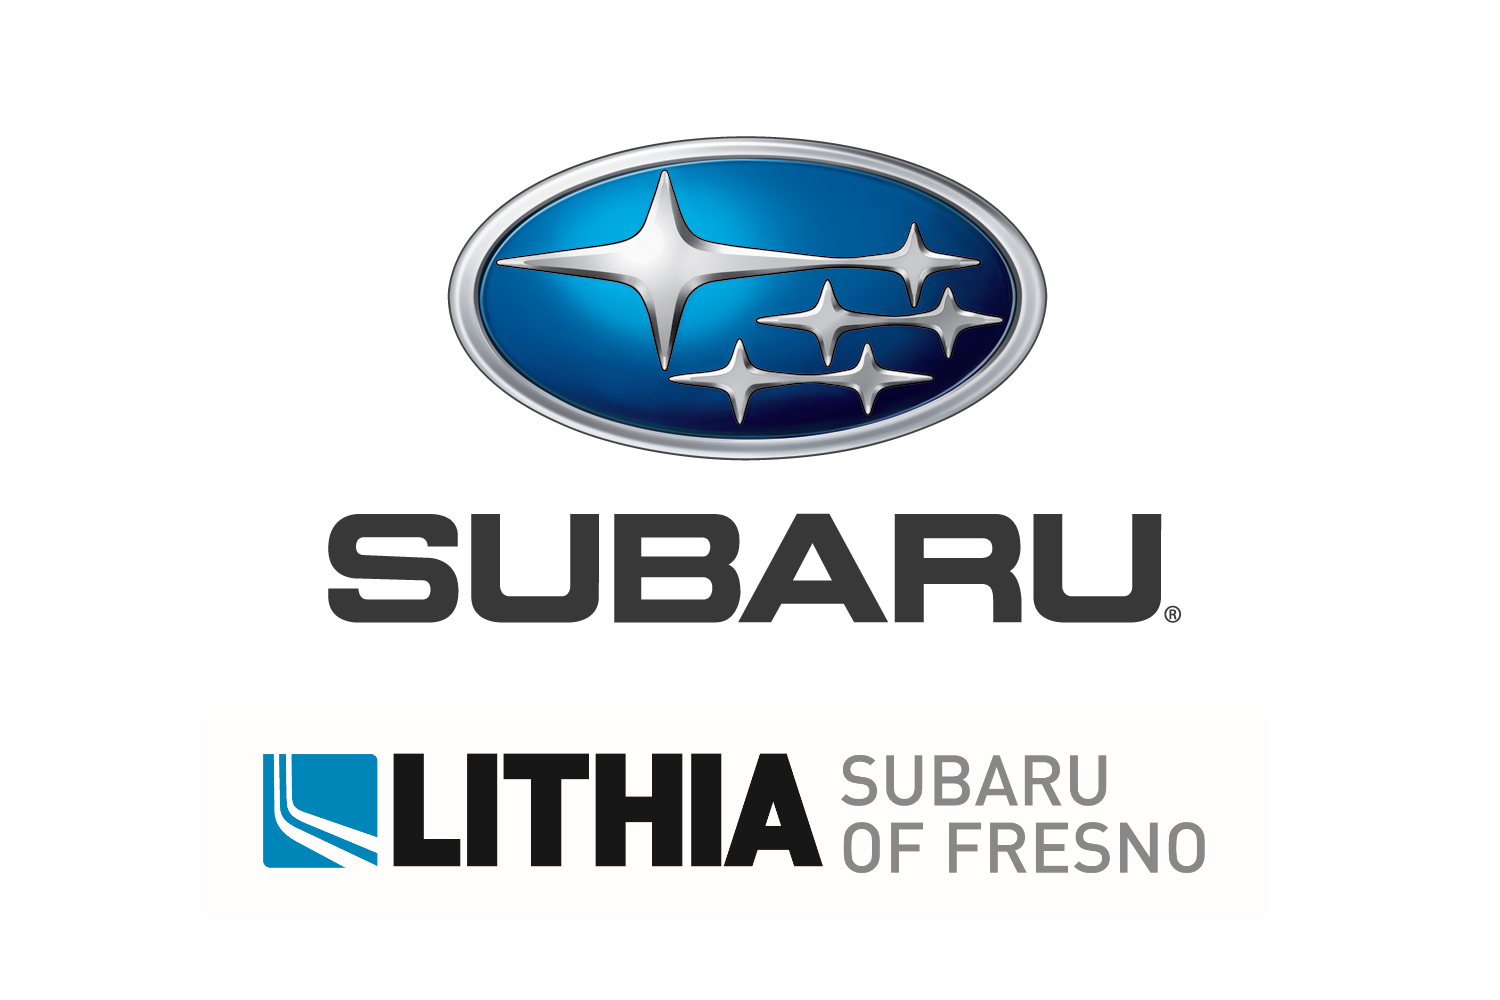 Lithia Subaru of Fresno (Elite)